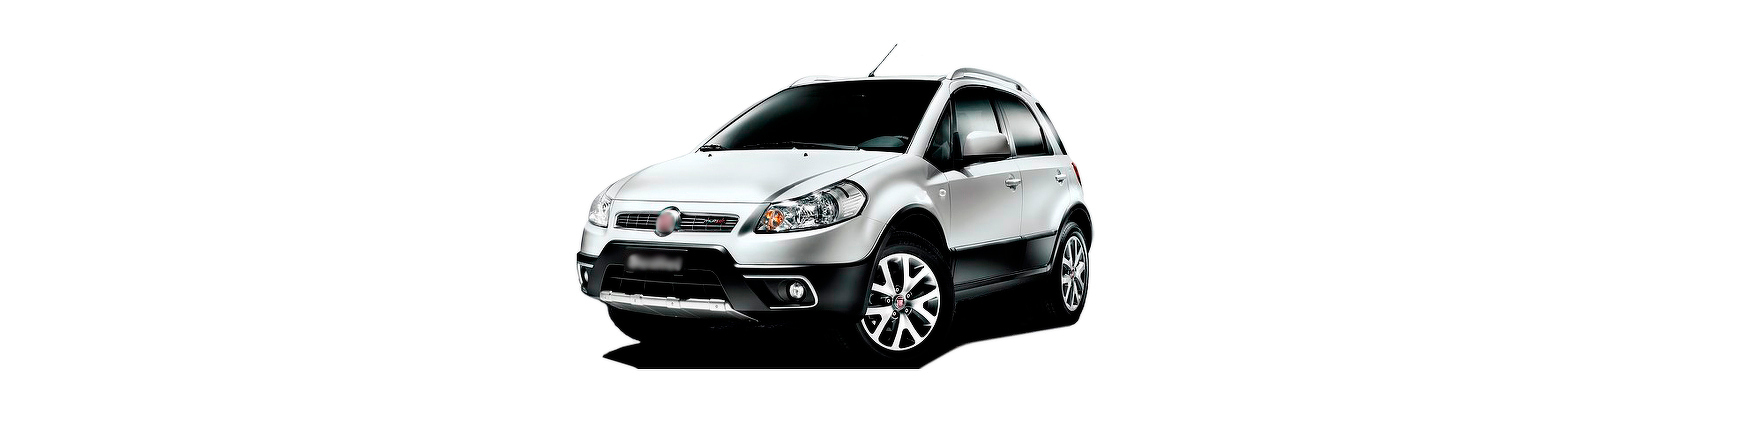 Fiat Sedici nuevos de 2006 2007 2008 2009 2010 2011 2012 2013 2014 15 16